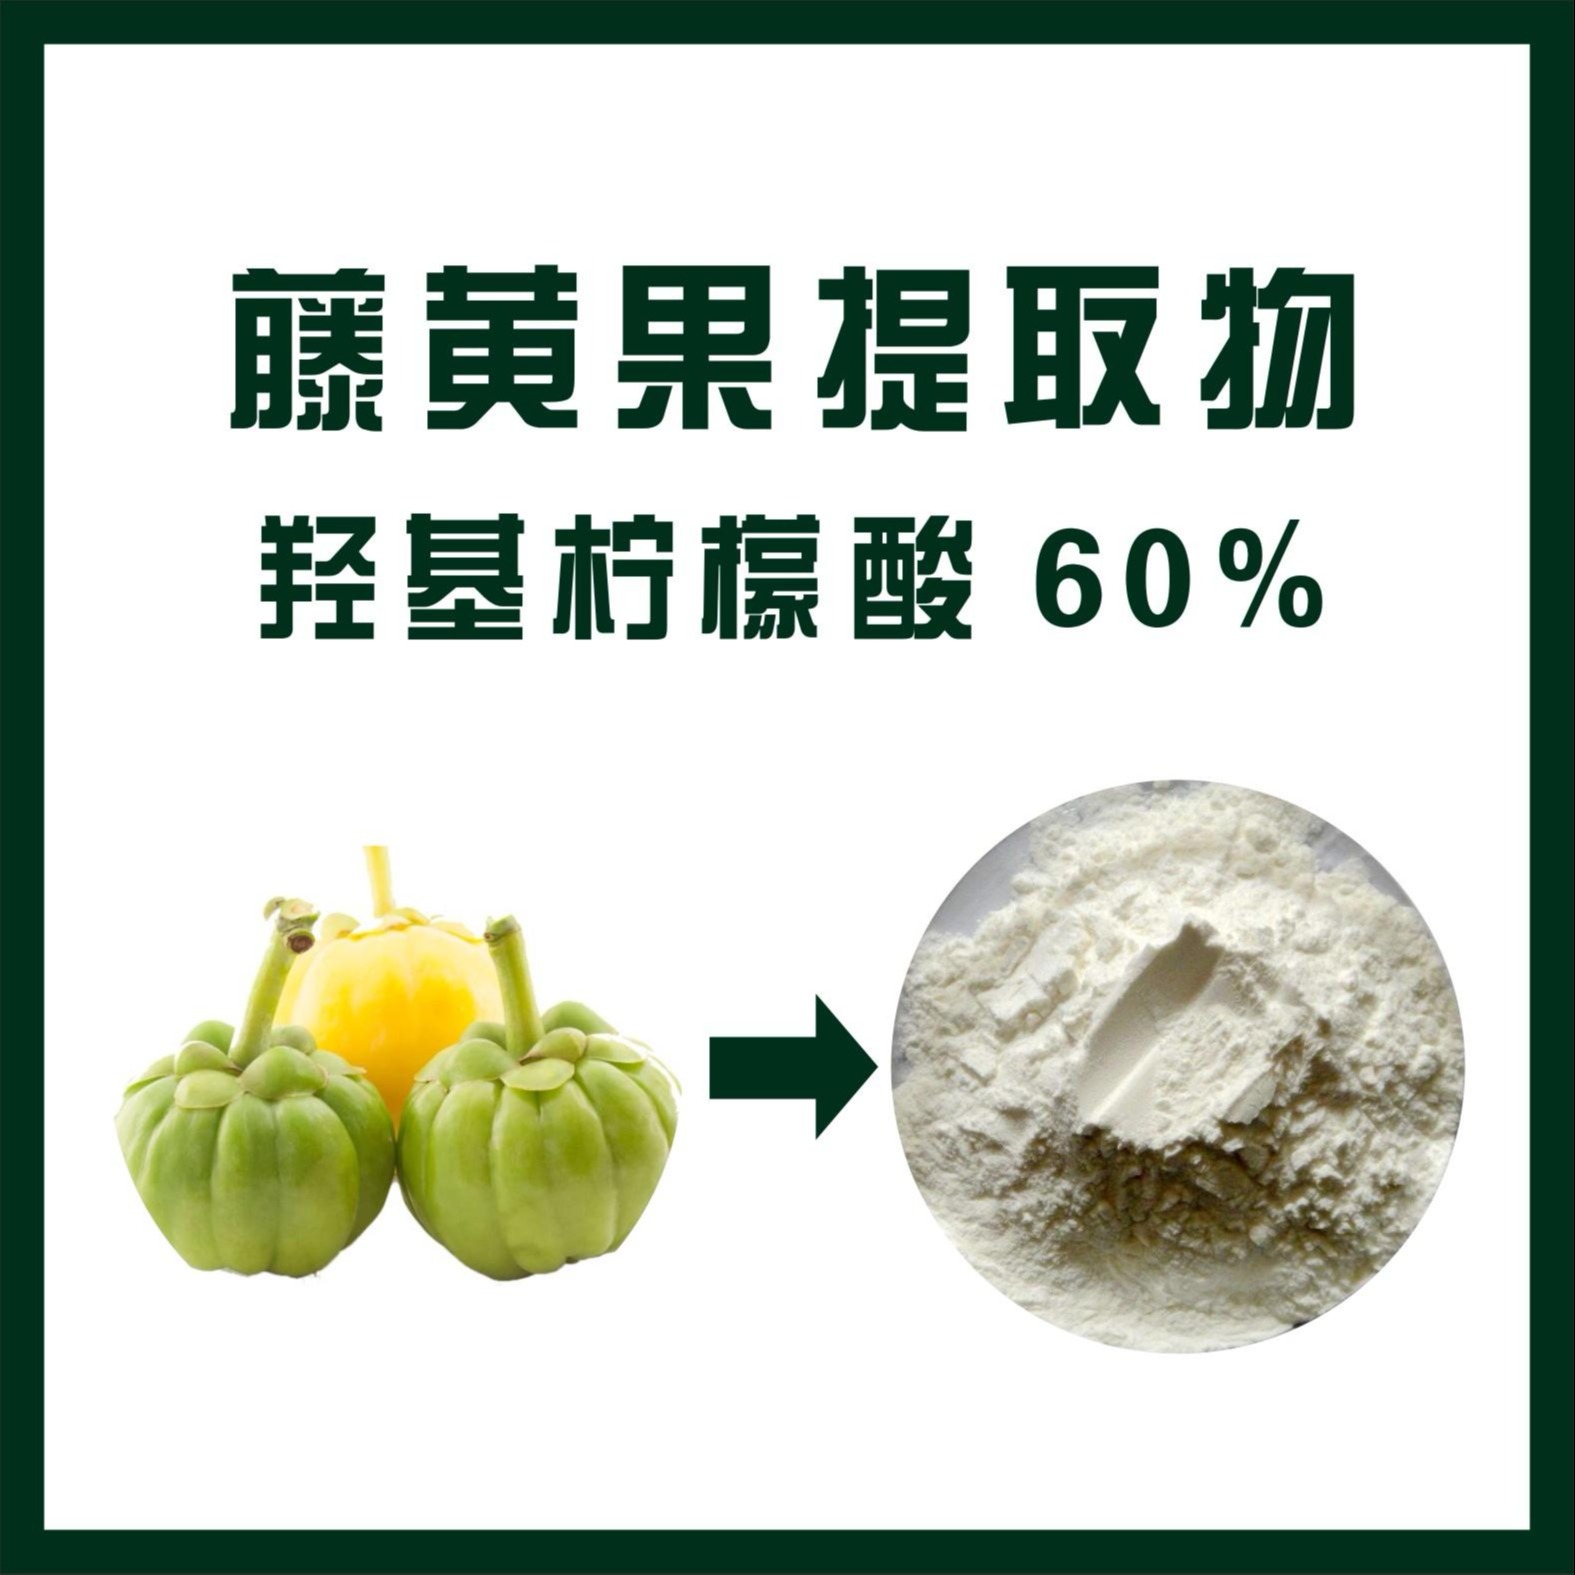 现货供应 藤黄果提取物  羟基柠檬酸60% 进口原料图片